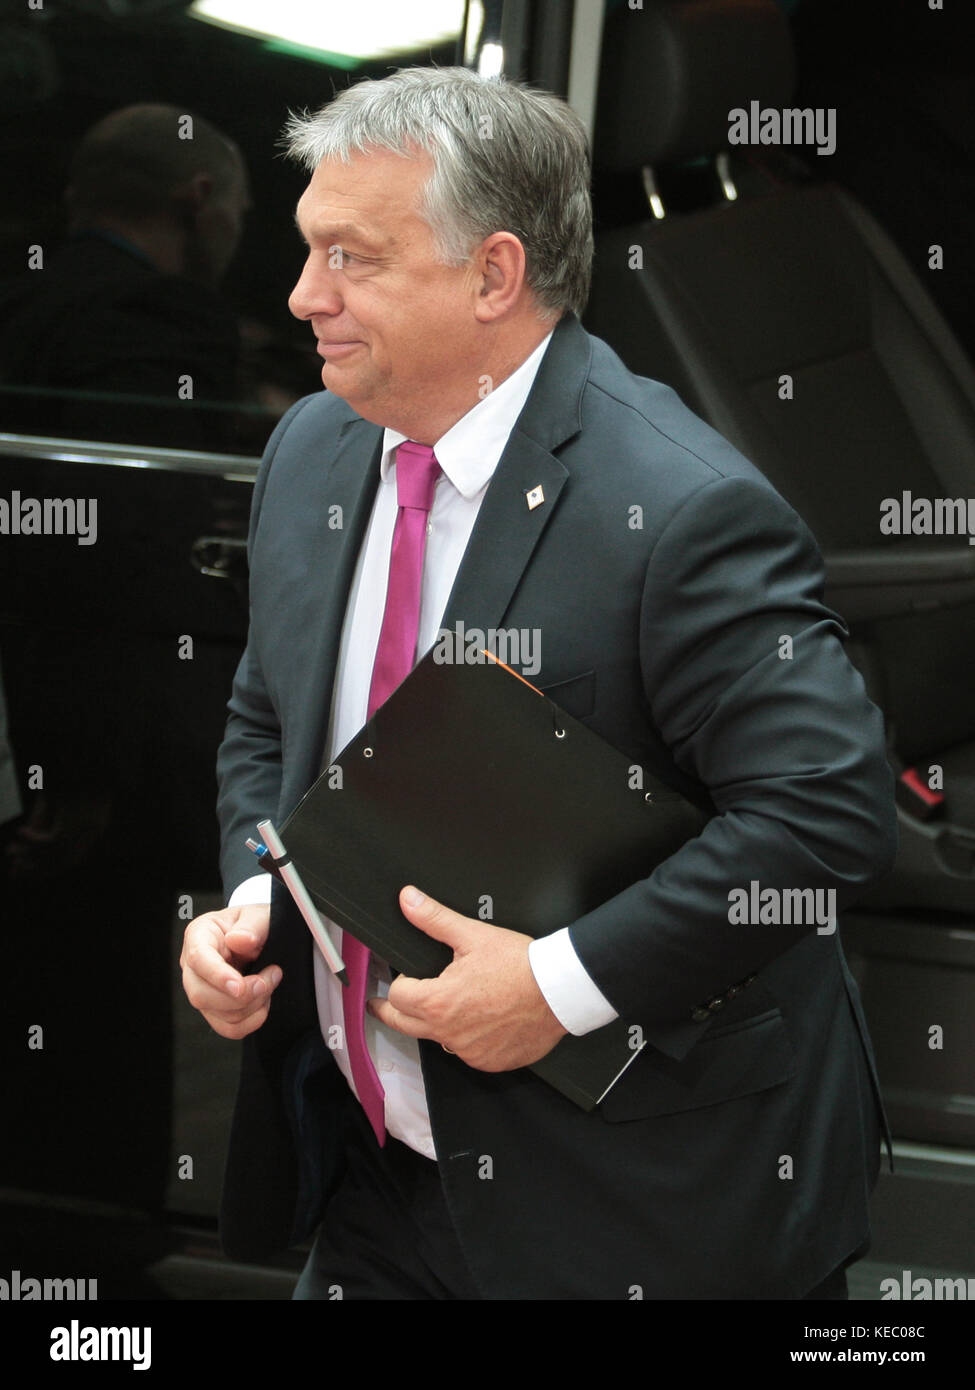 Bruselas, Bélgica. 19 oct, 2017. Víctor Orban, Primer Ministro de Hungría en el Consejo Europeo. Crédito: leo cavallo/alamy live news Foto de stock